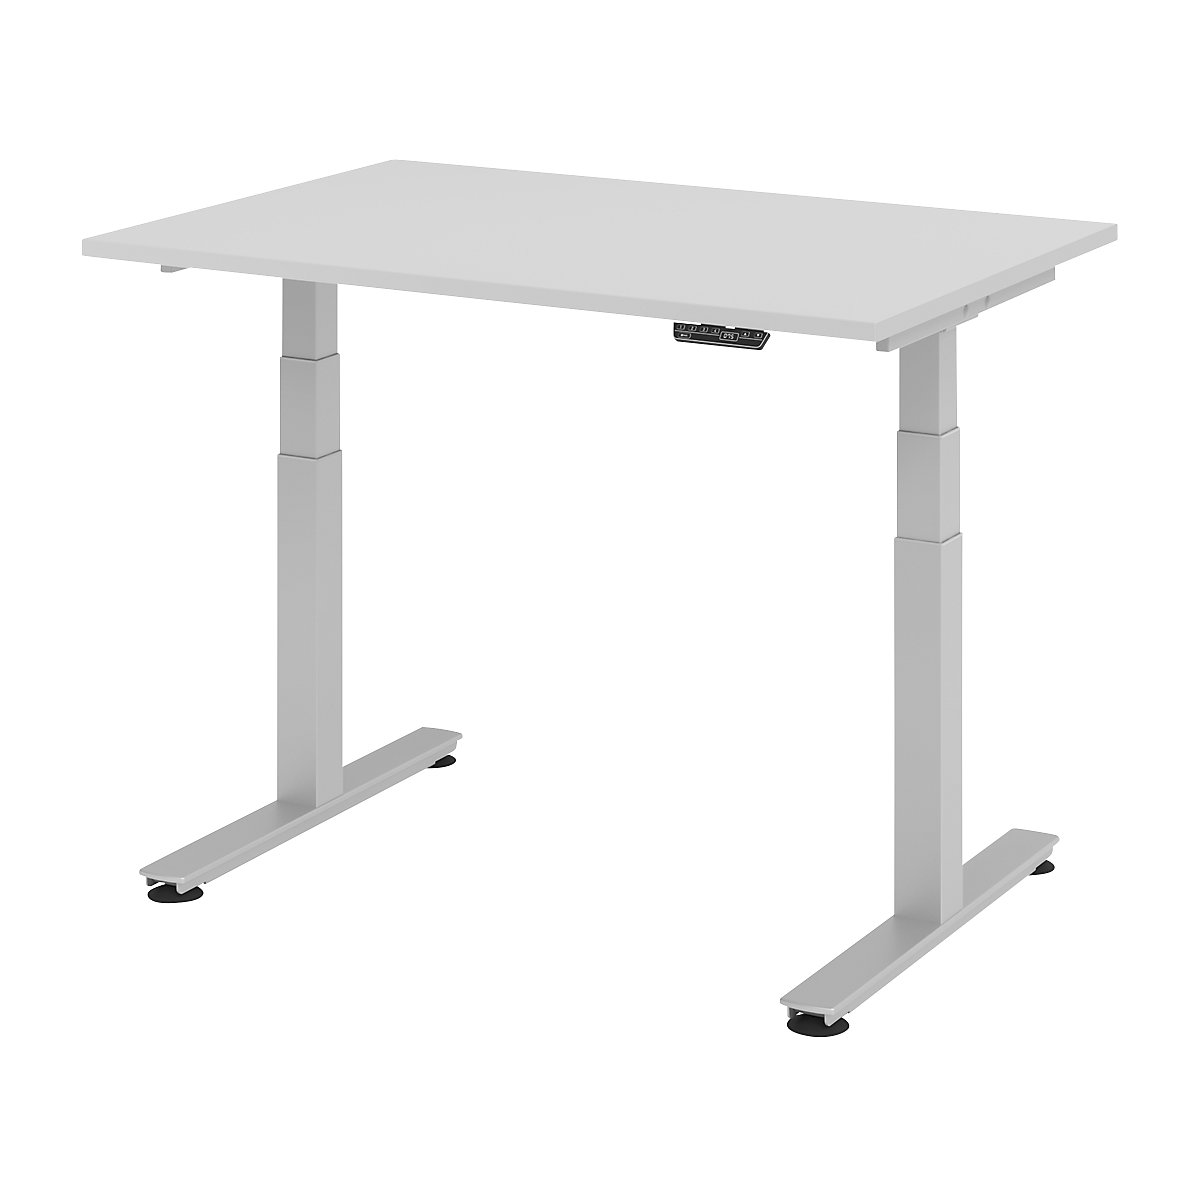 Sta-bureautafel, elektrisch in hoogte verstelbaar UPLINER-2.0, recht, b x d = 1200 x 800 mm, lichtgrijs-15